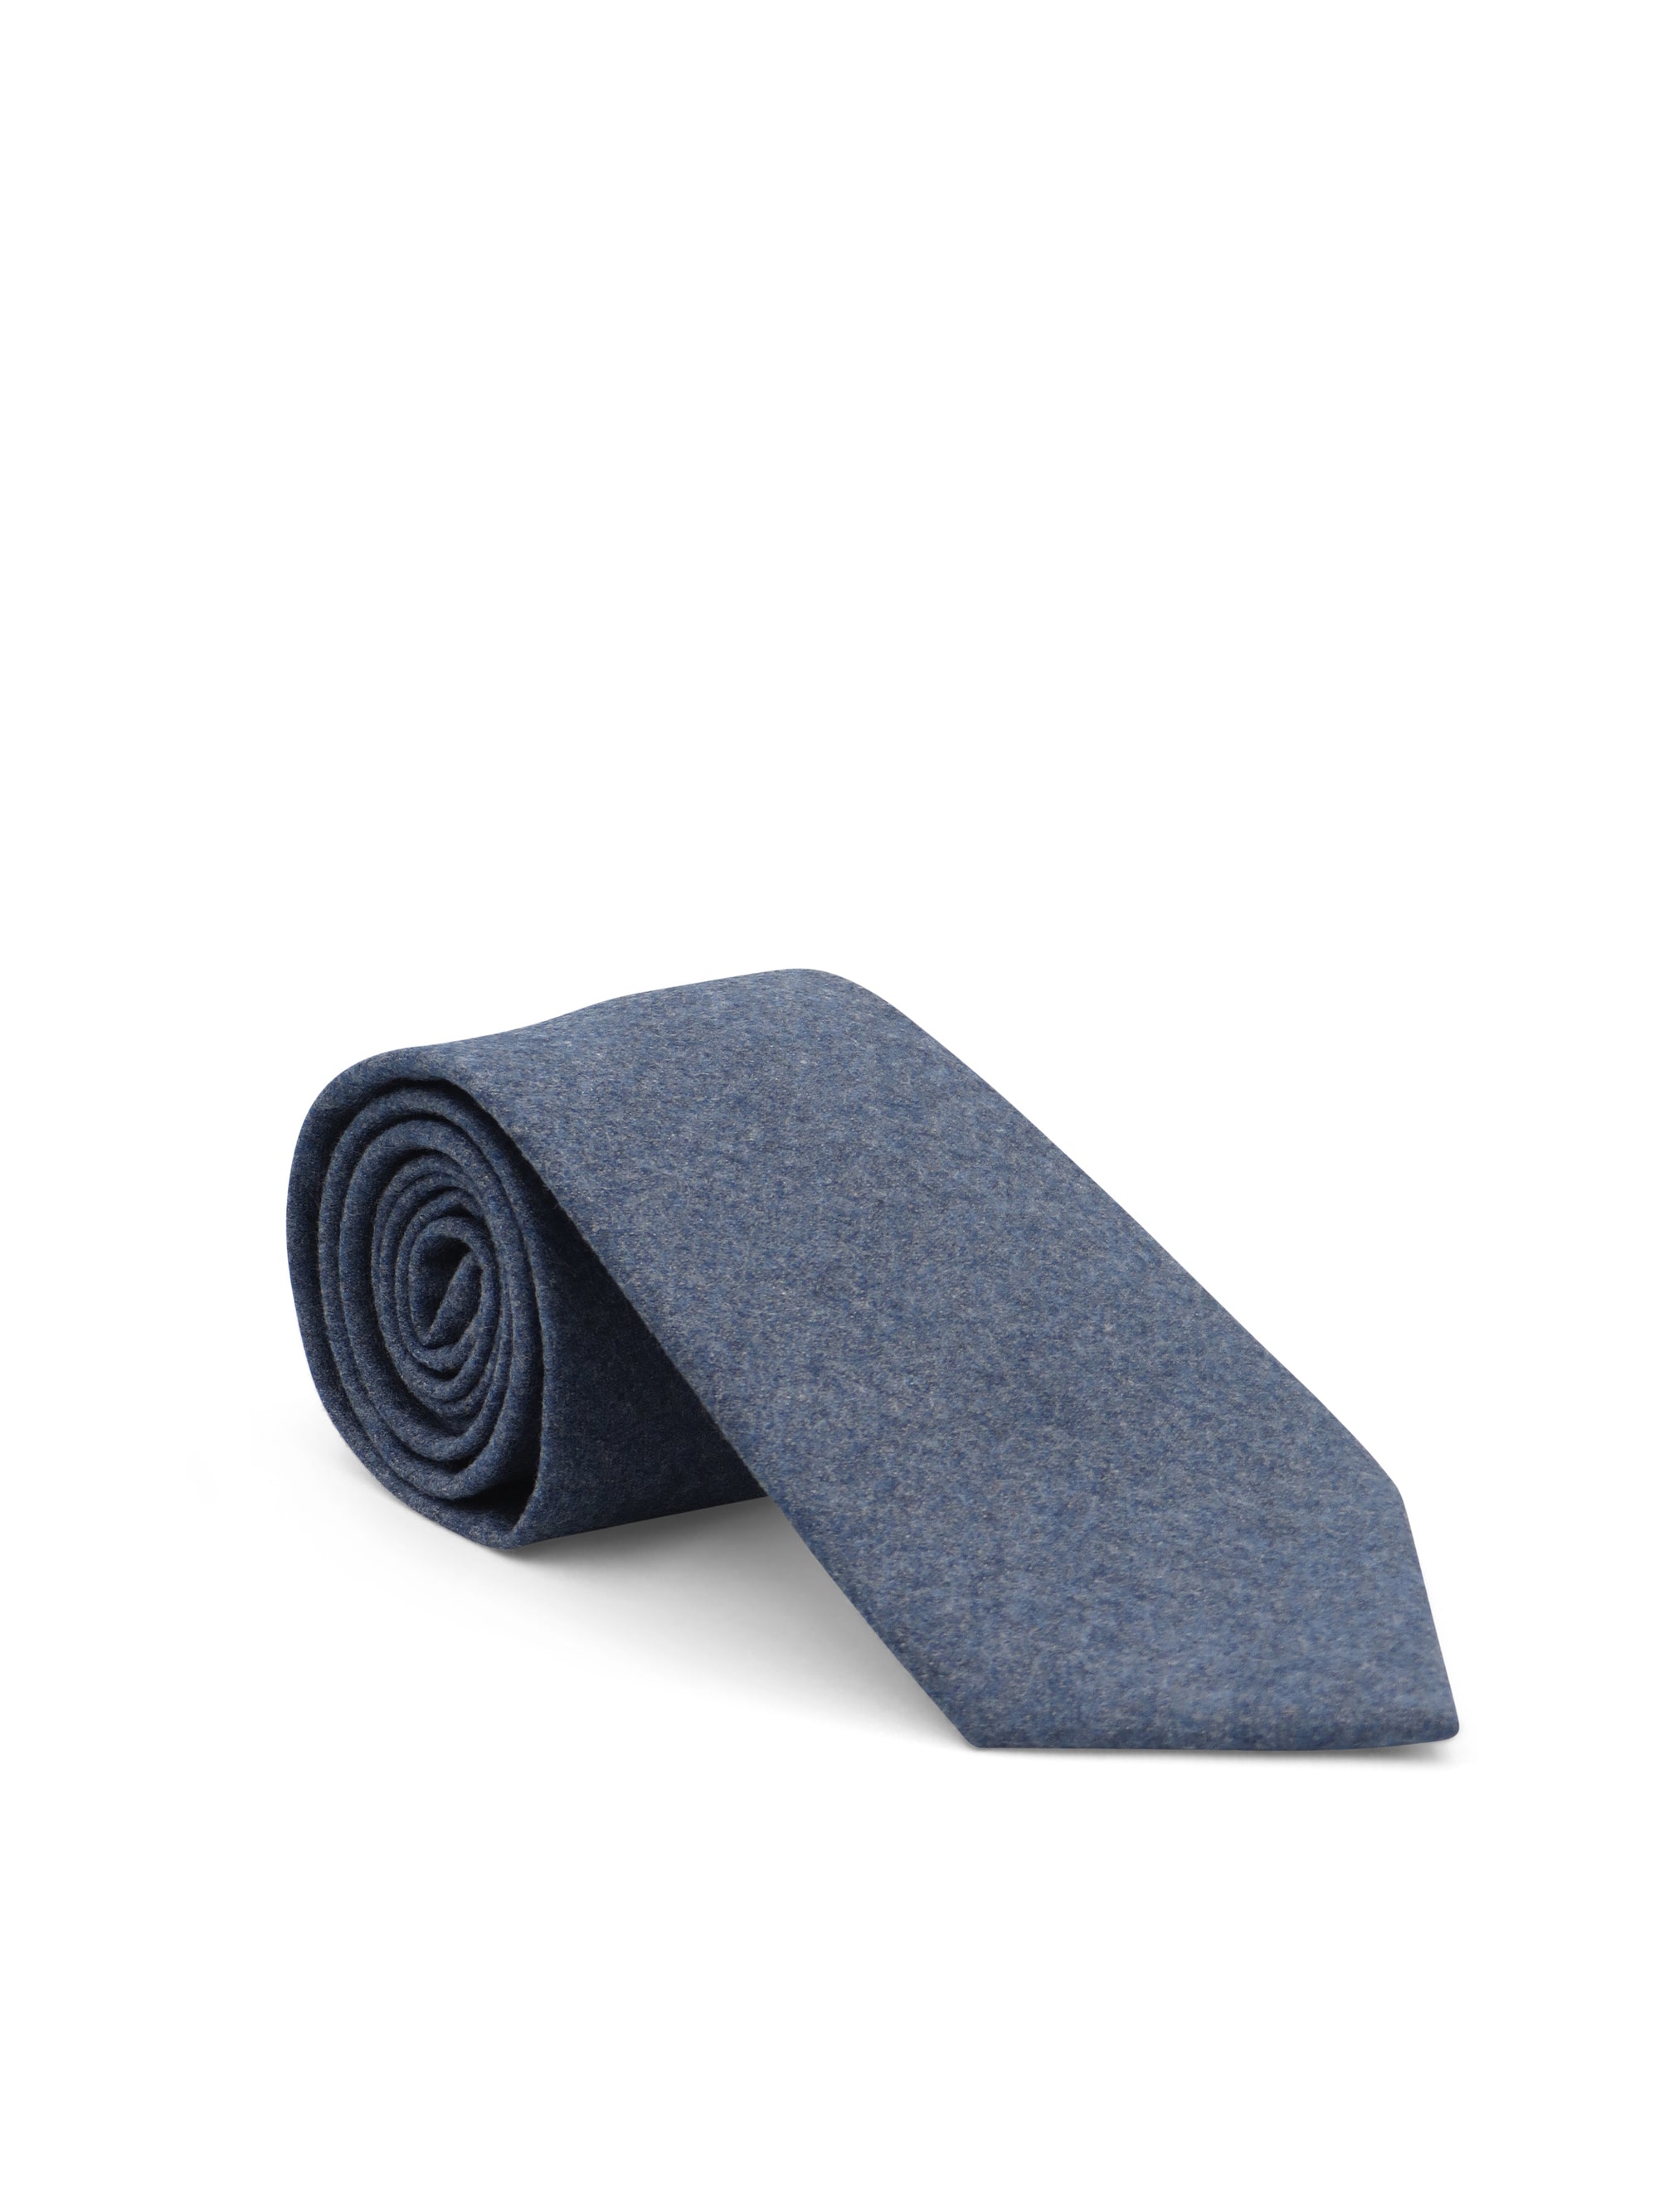 Alder & Green Muted Blue Wool Tie